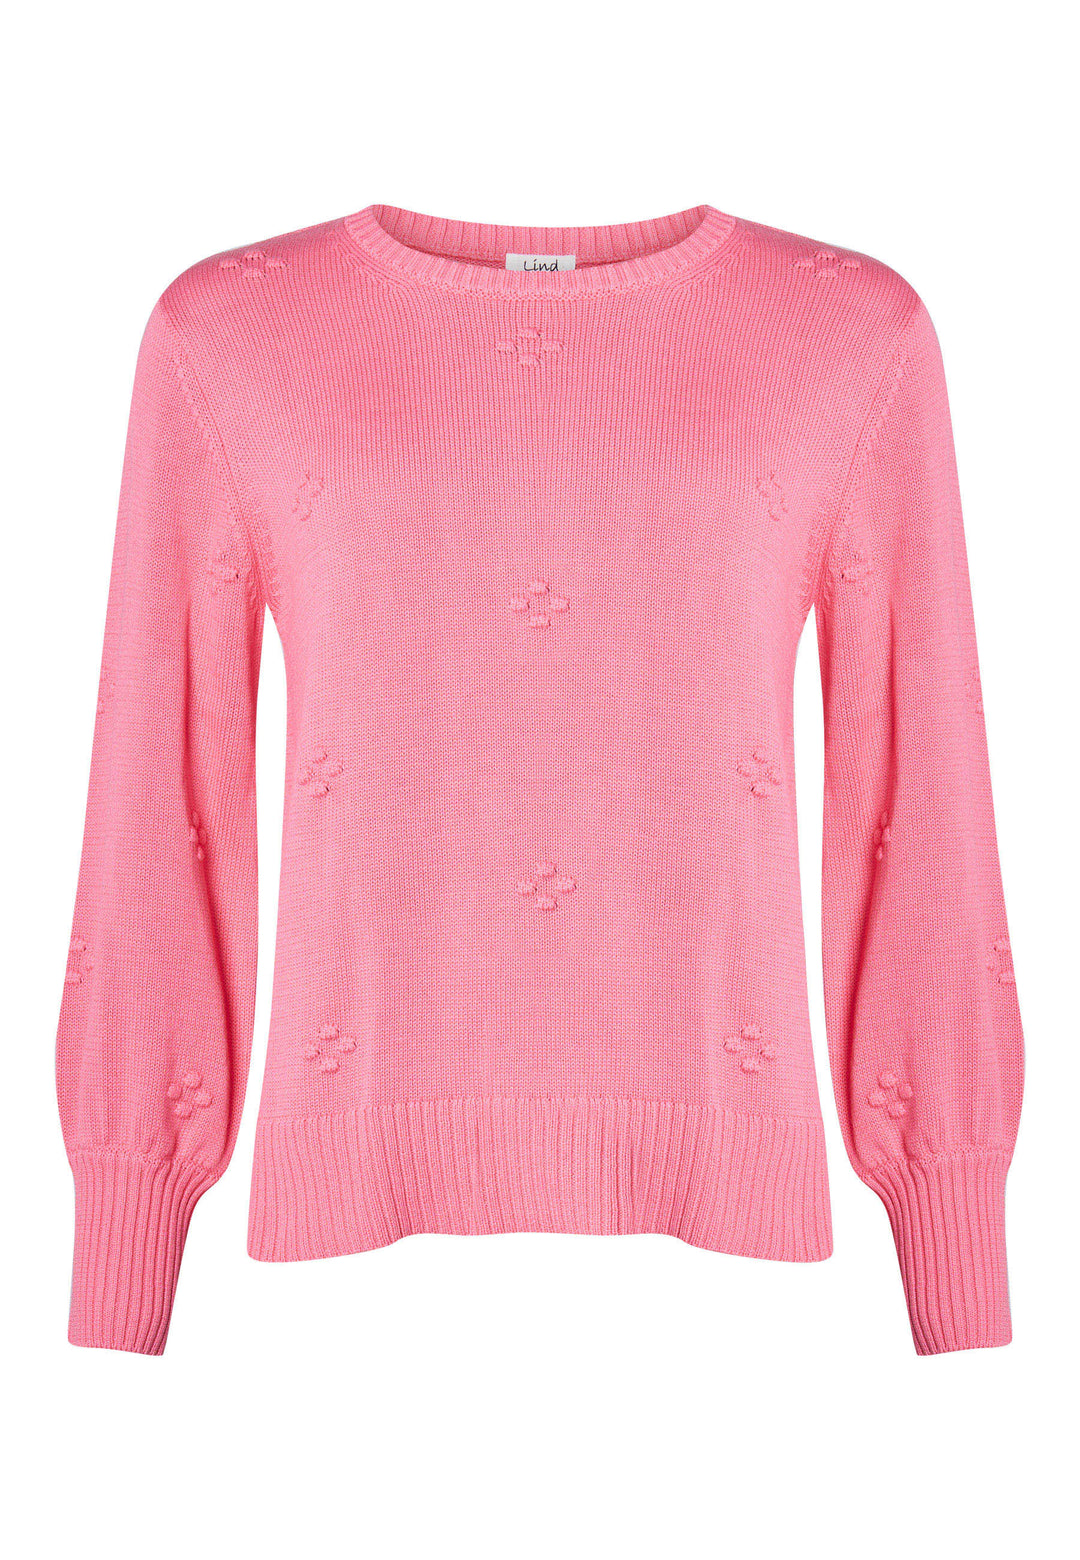 Lind LICamma Knit Pullover 6400 Sorbet Pink